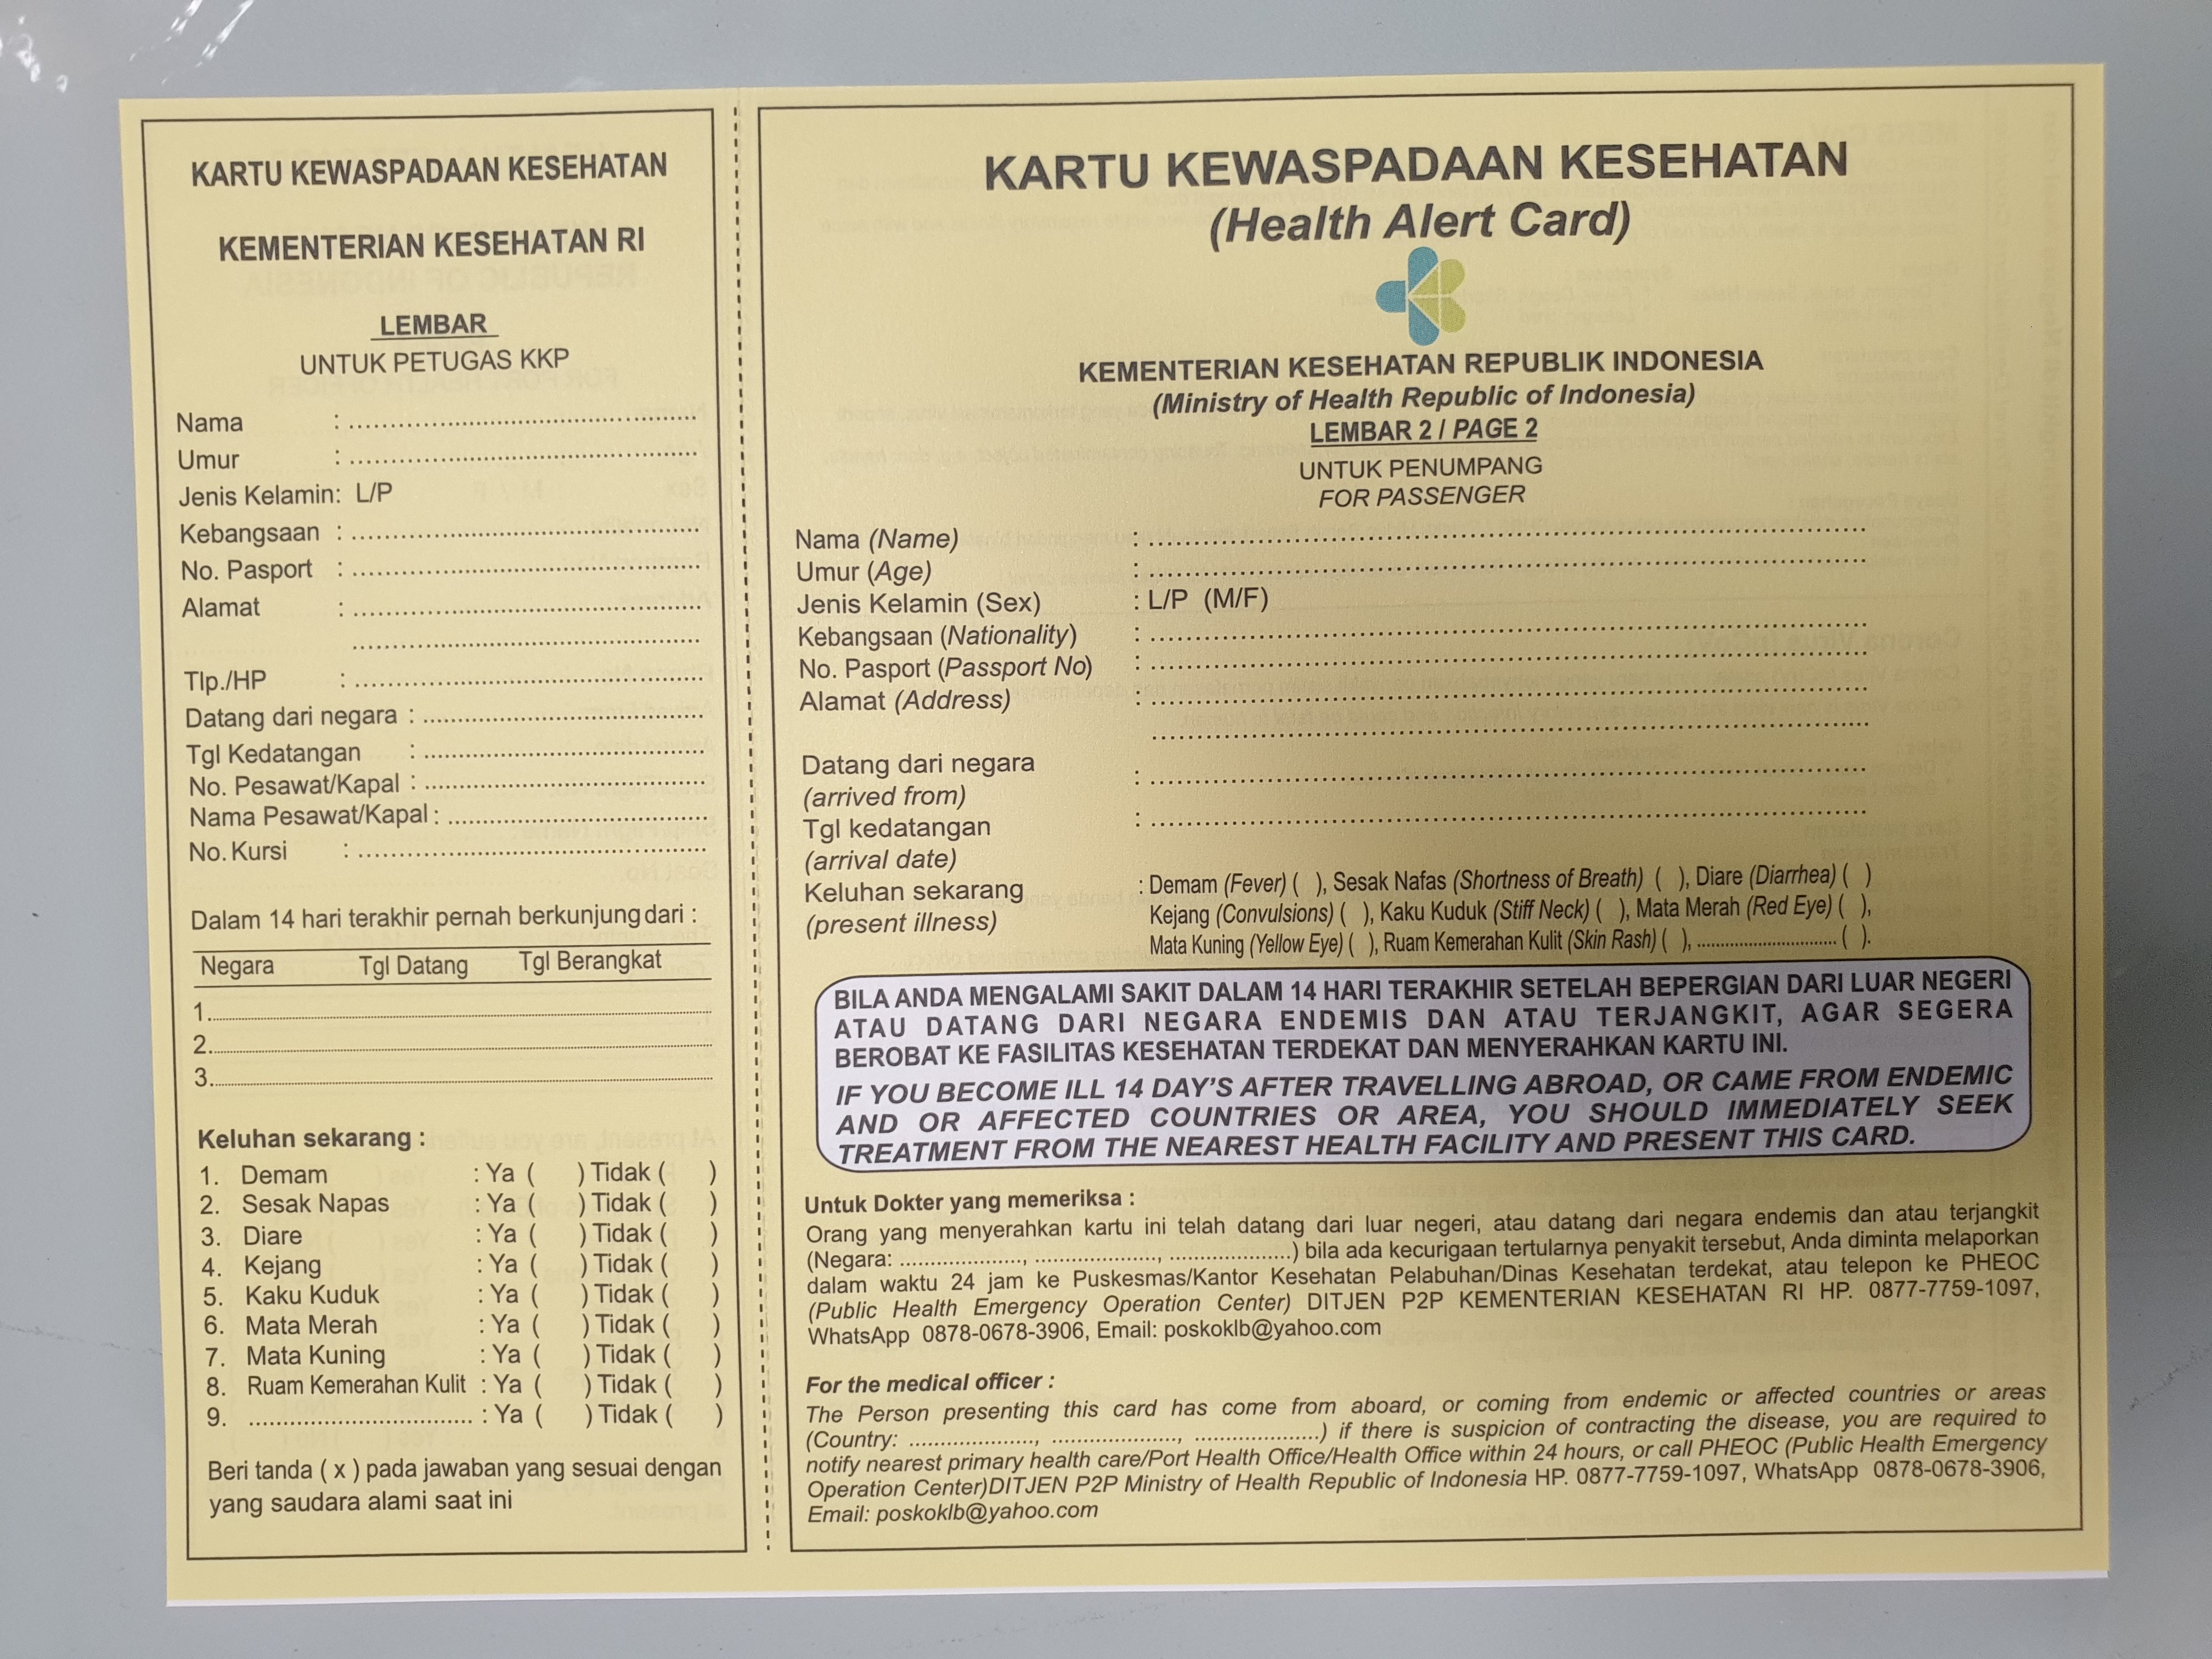 한국발 탑승자 모두는 인도네시아 보건부 양식의 건강기록카드를 기내에서 작성해서 입국 검열 심사코너에 제출해야 한다. 자료제공 아시아나 항공 자카르타 지점